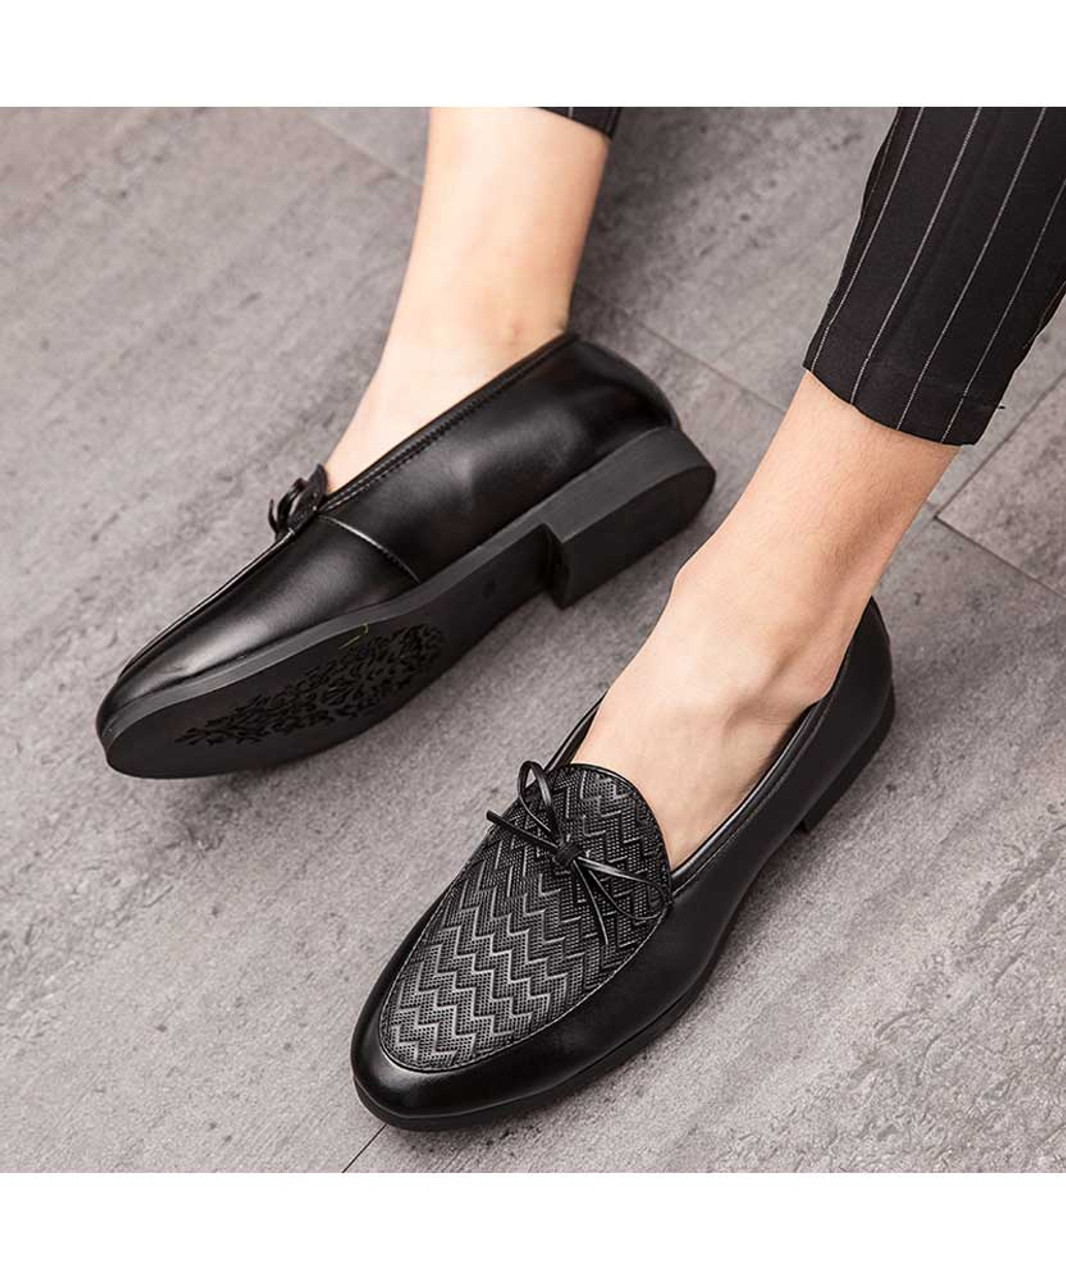 Black weave pattern bow tie leather slip on dress shoe | Mens dress ...